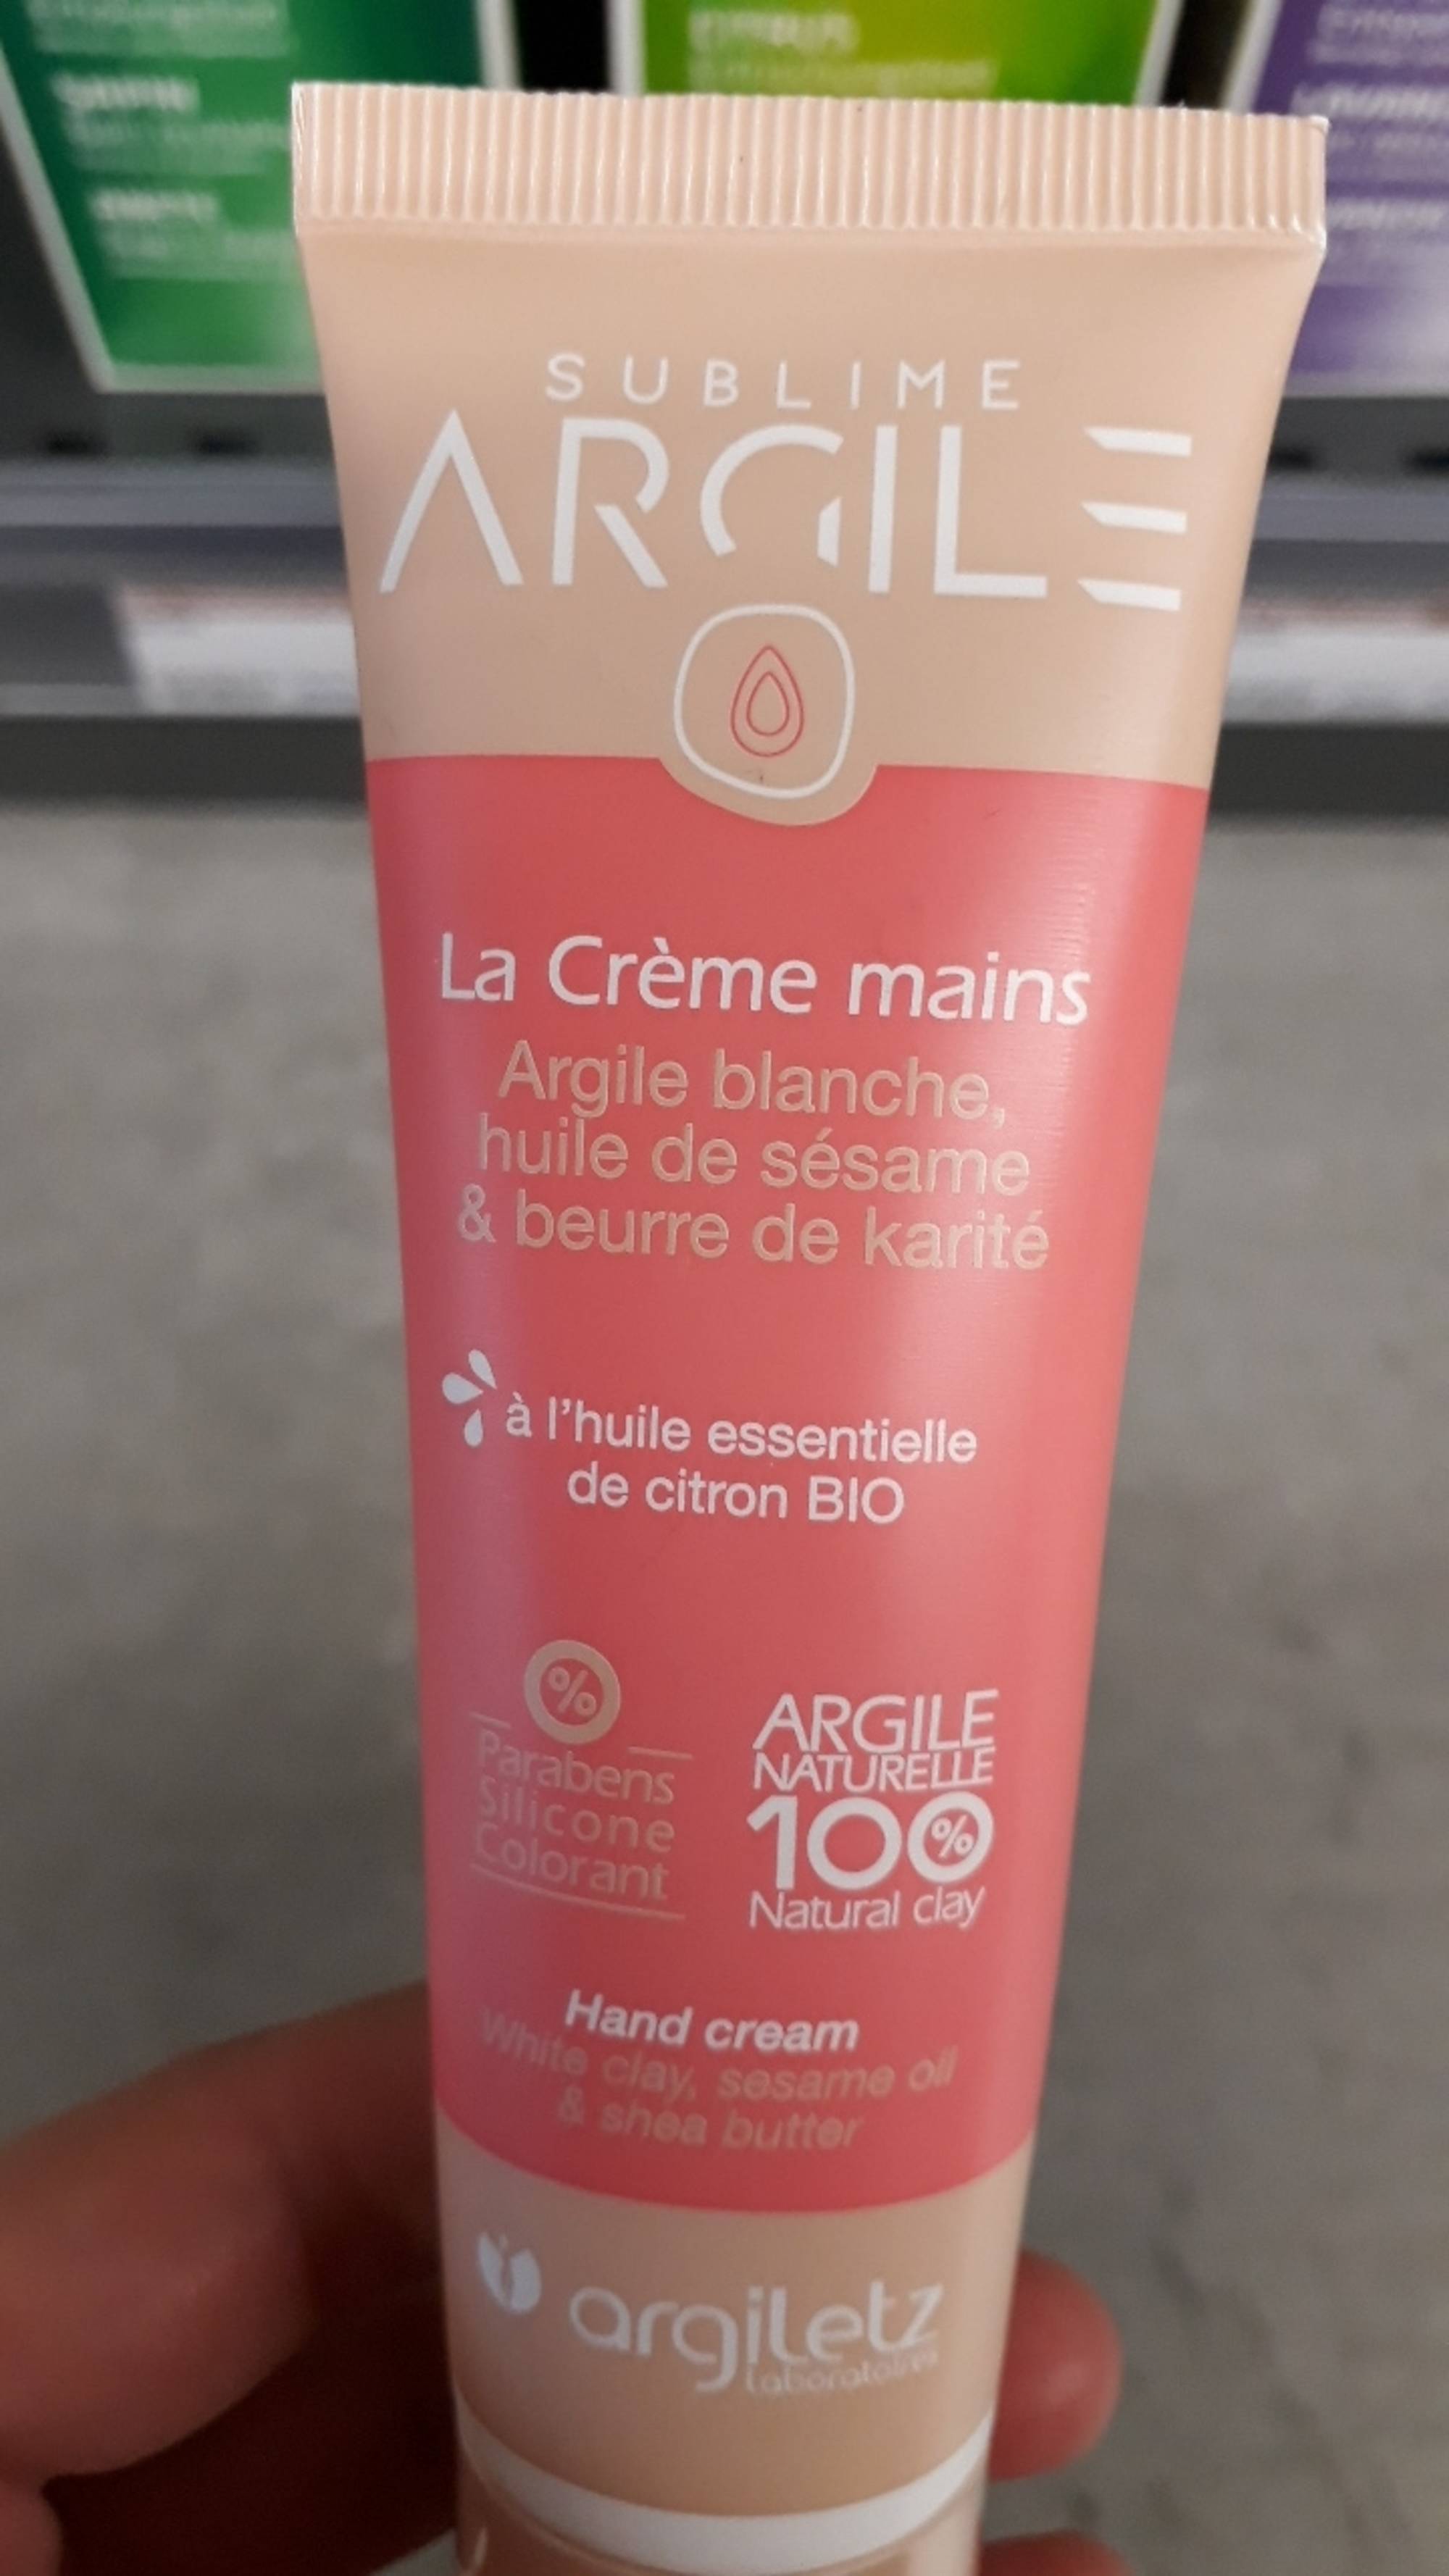 ARGILETZ - Sublime argile - La crème mains